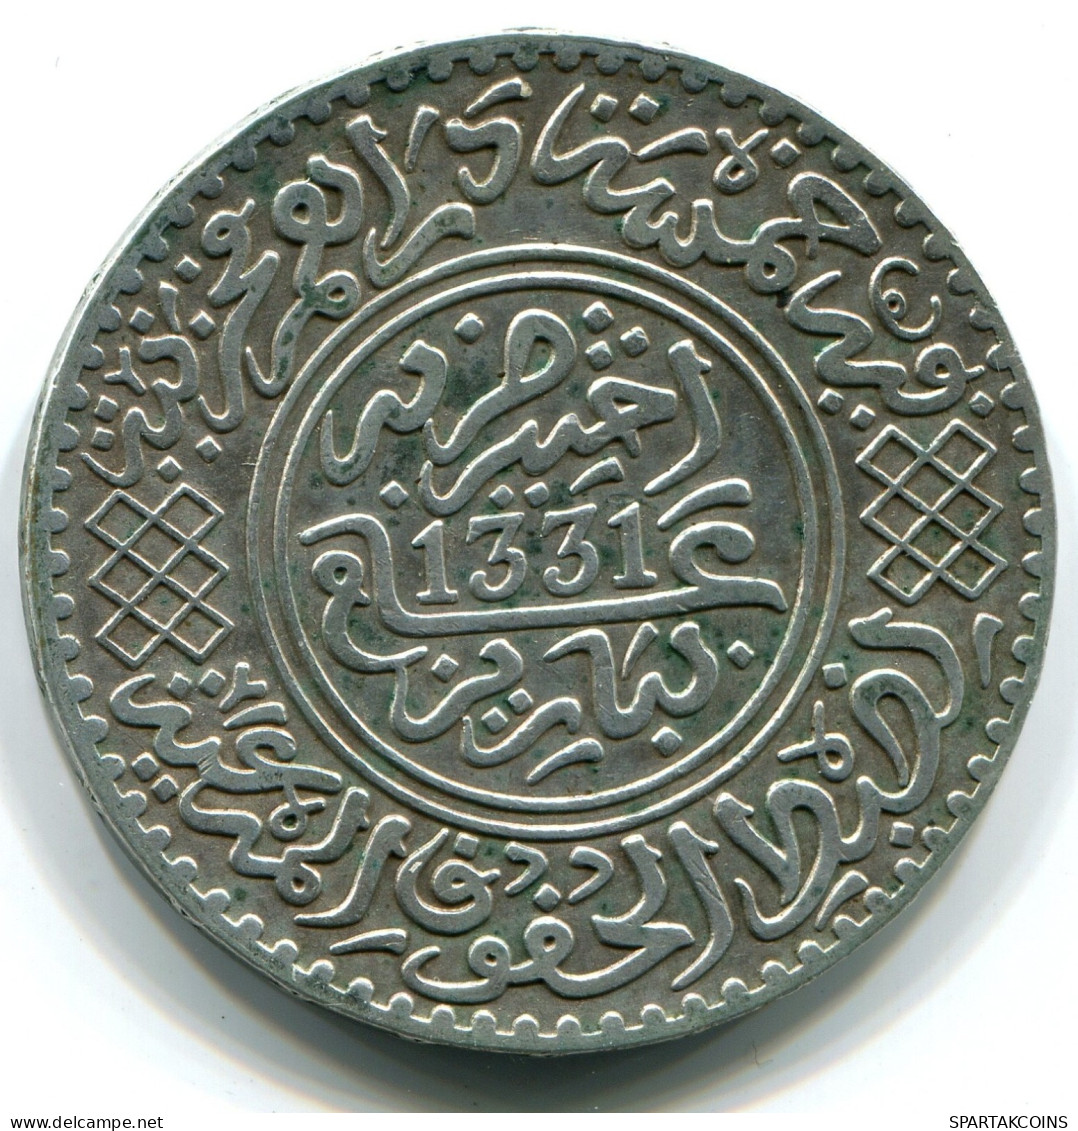 5 DIRHAM (1/2 RIAL) 1913 MARRUECOS MOROCCO Yusuf Paris Moneda #W10496.54.E.A - Morocco